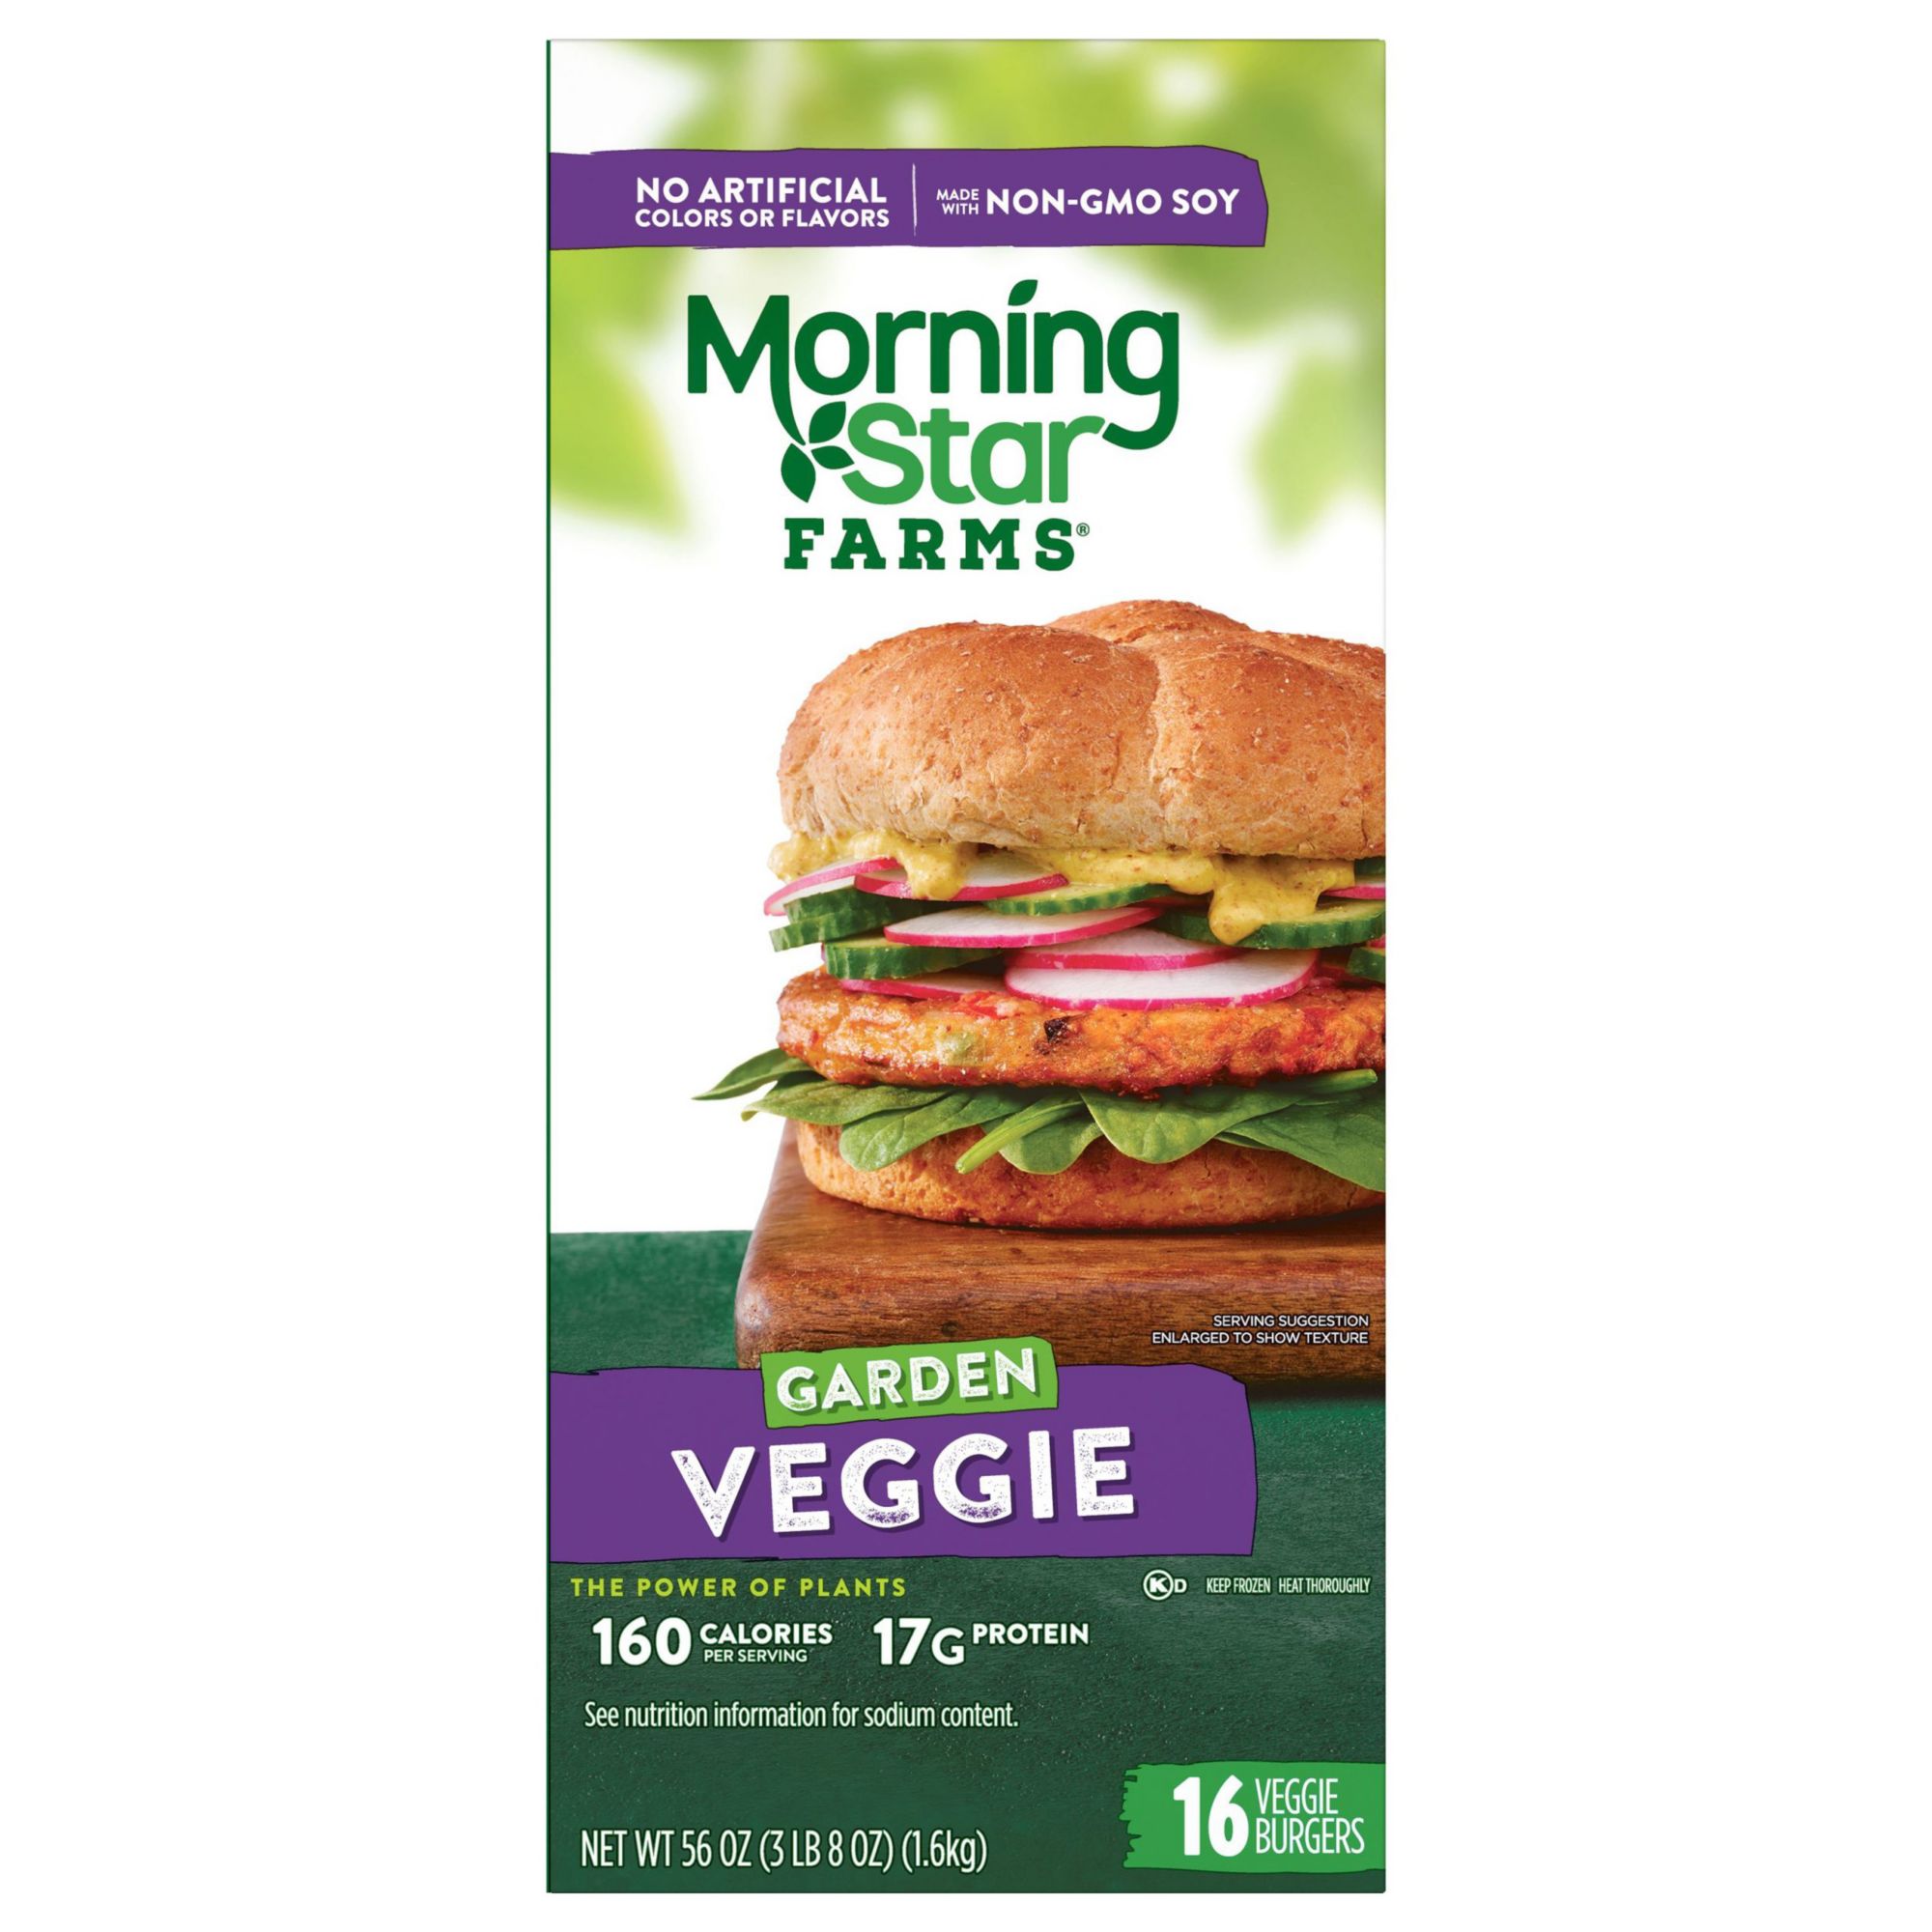 Morningstar Garden Veggie Burger Nutrition Facts | Besto Blog